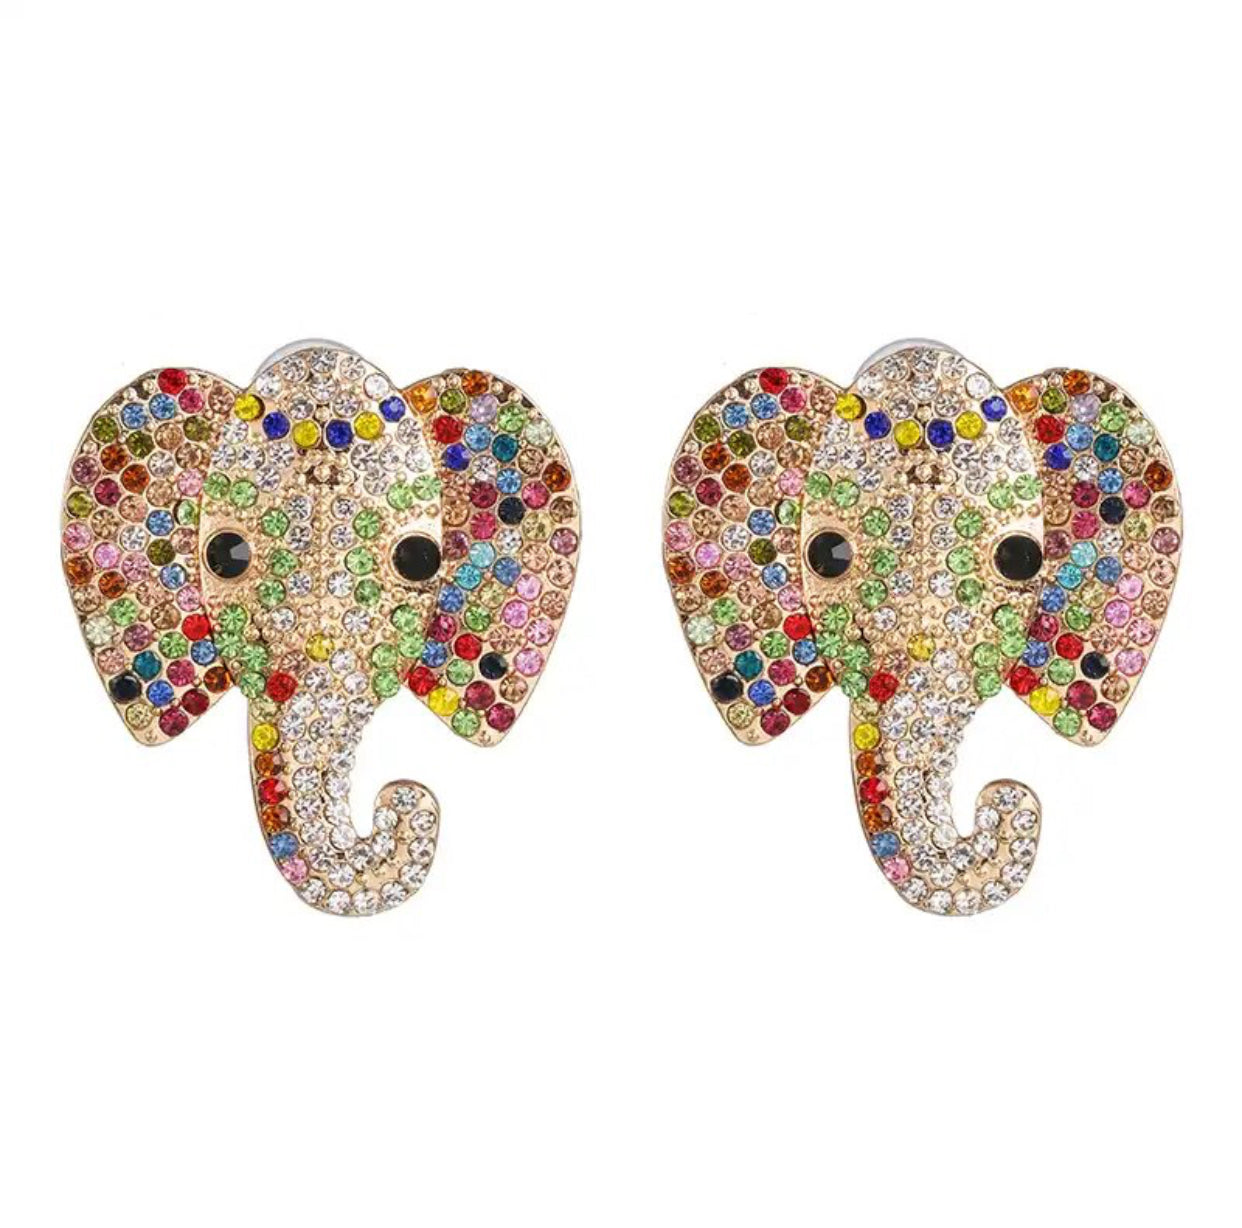 Jeweled Elephant Earrings